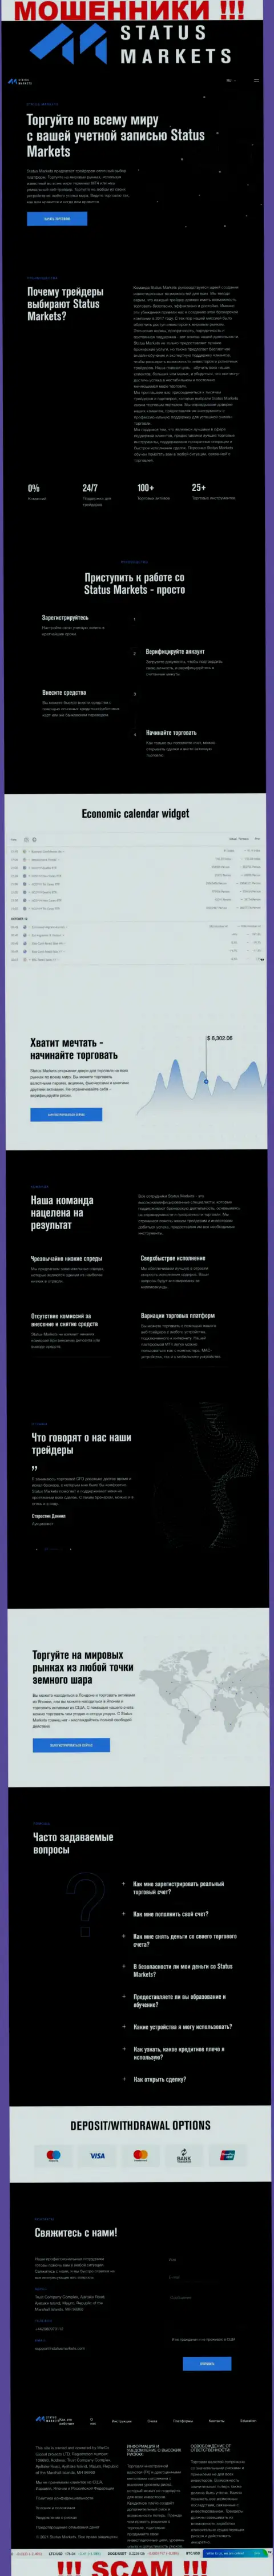 Скриншот официального информационного ресурса мошеннической конторы Глобал Продждект ЛТД